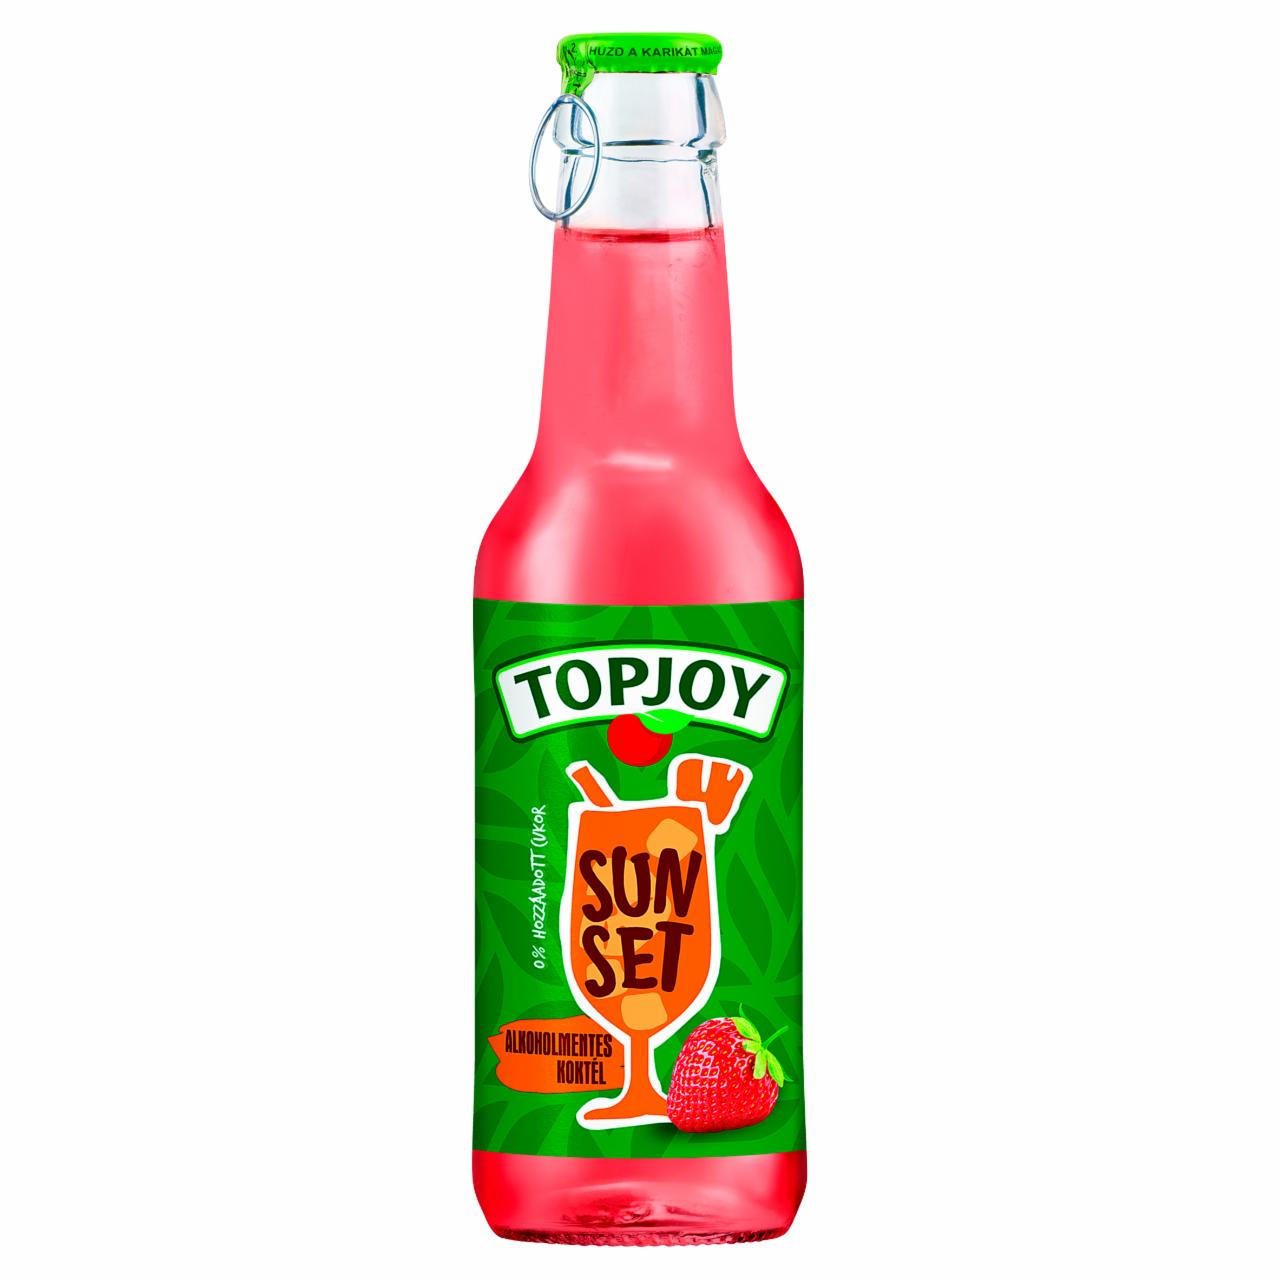 Képek - Topjoy Sunset energiaszegény, fehér rum ízű alma-lime-ananász-eper ital édesítőszerekkel 250 ml